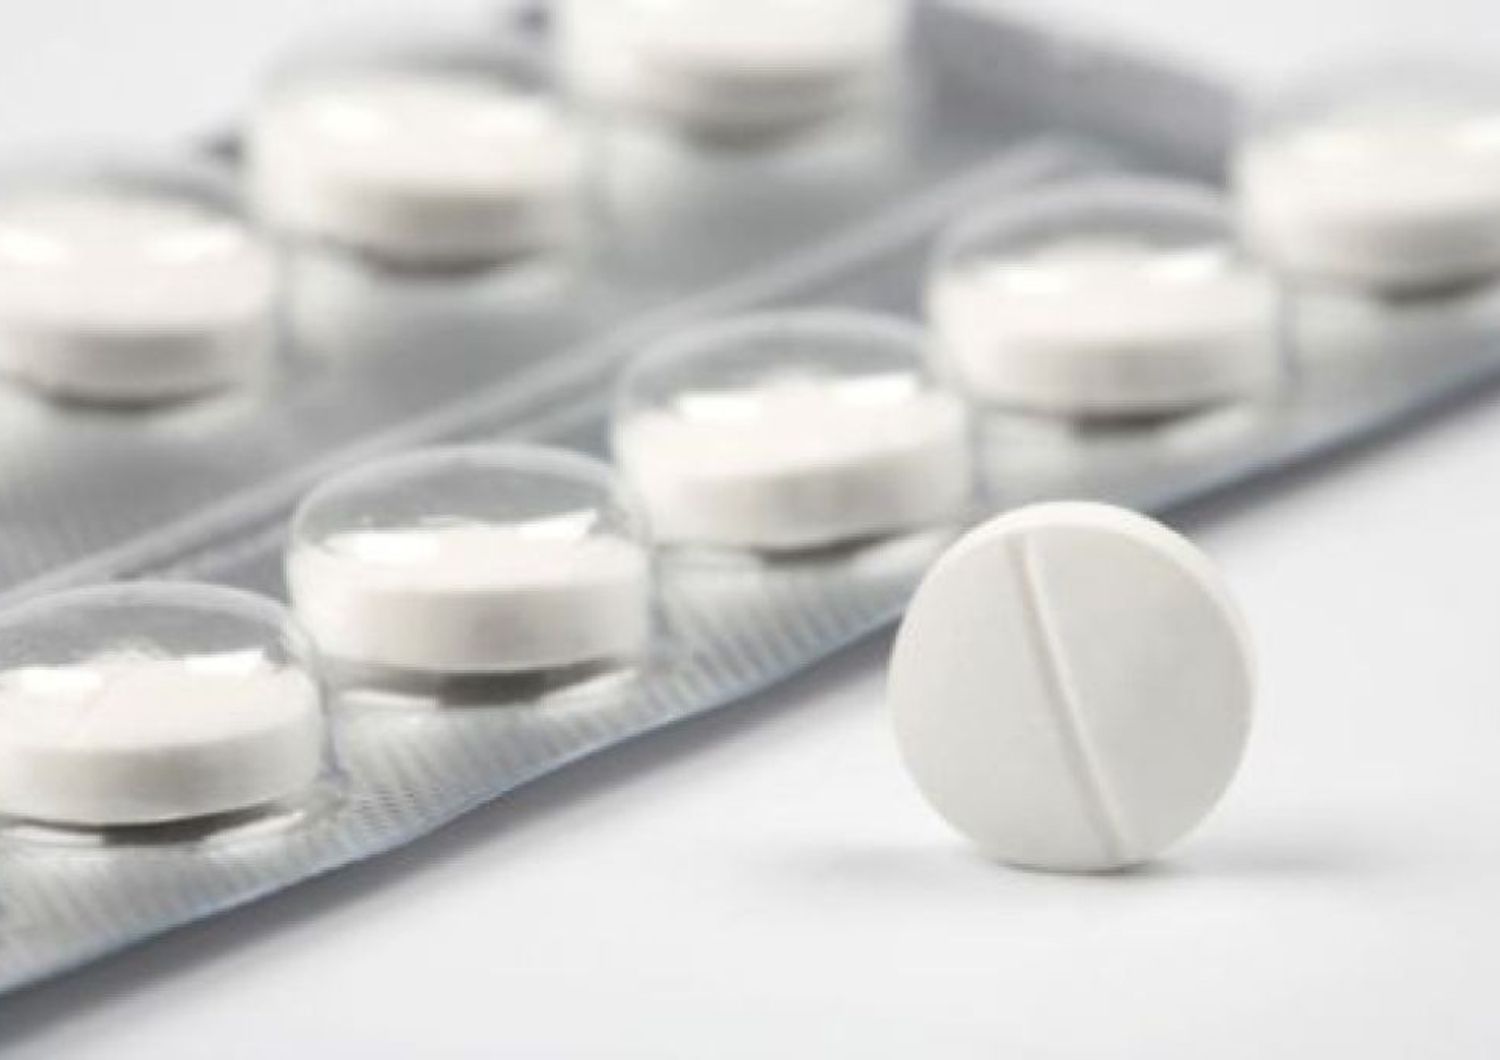 Farmaci: paracetamolo inutile contro dolore per osteoartrite